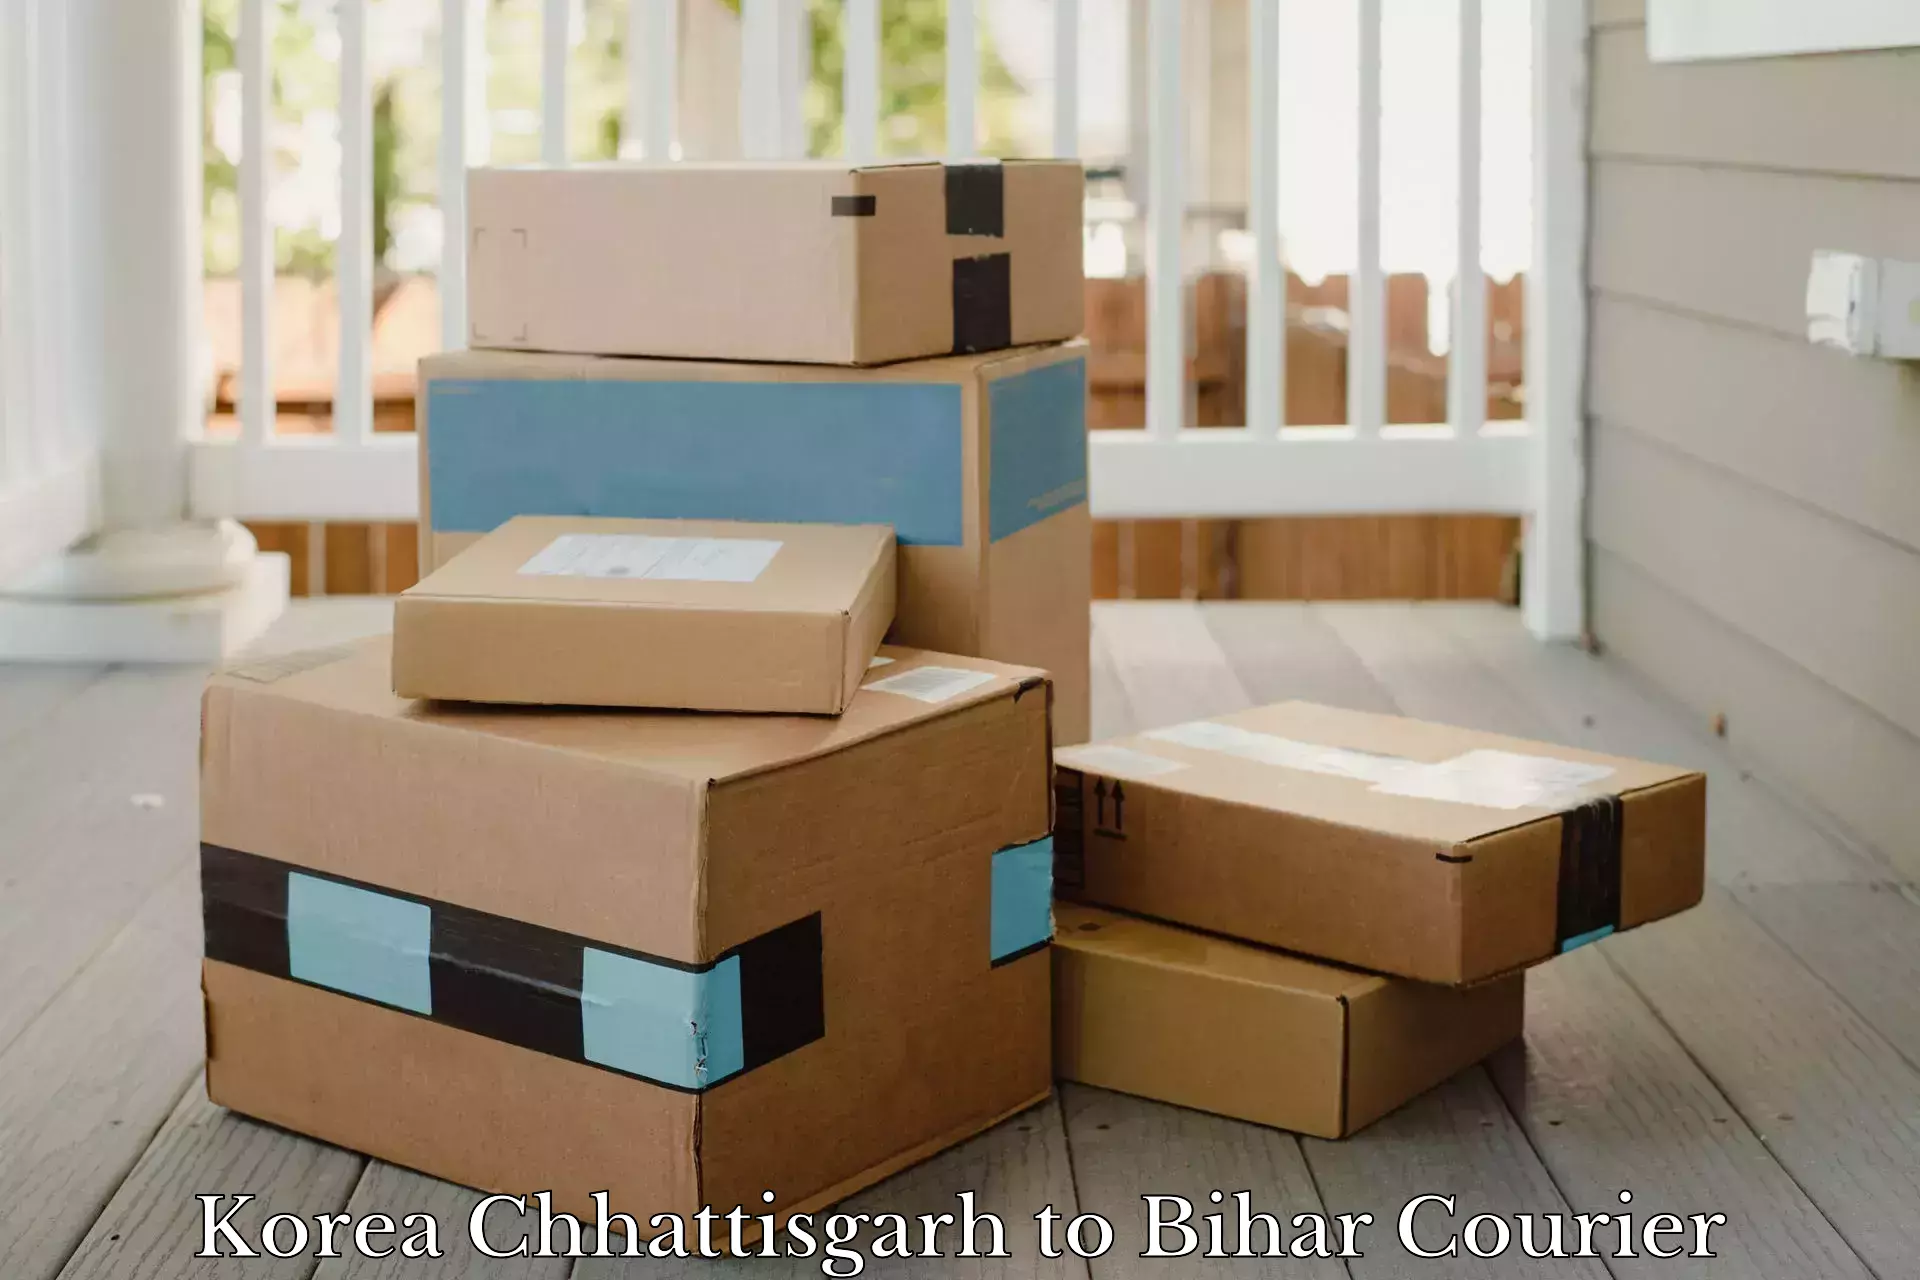 24-hour courier service Korea Chhattisgarh to Chandi Nalanda